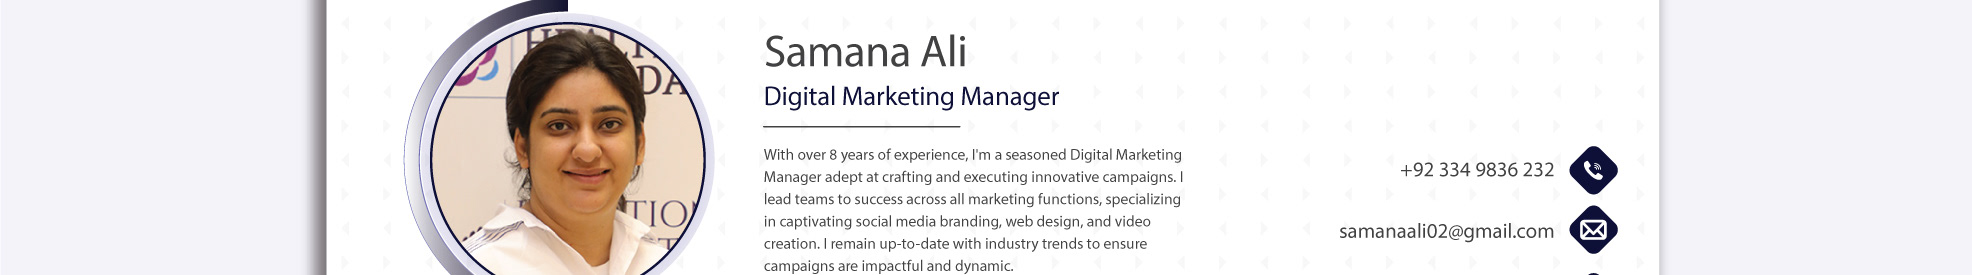 Banner de perfil de Samana Ali